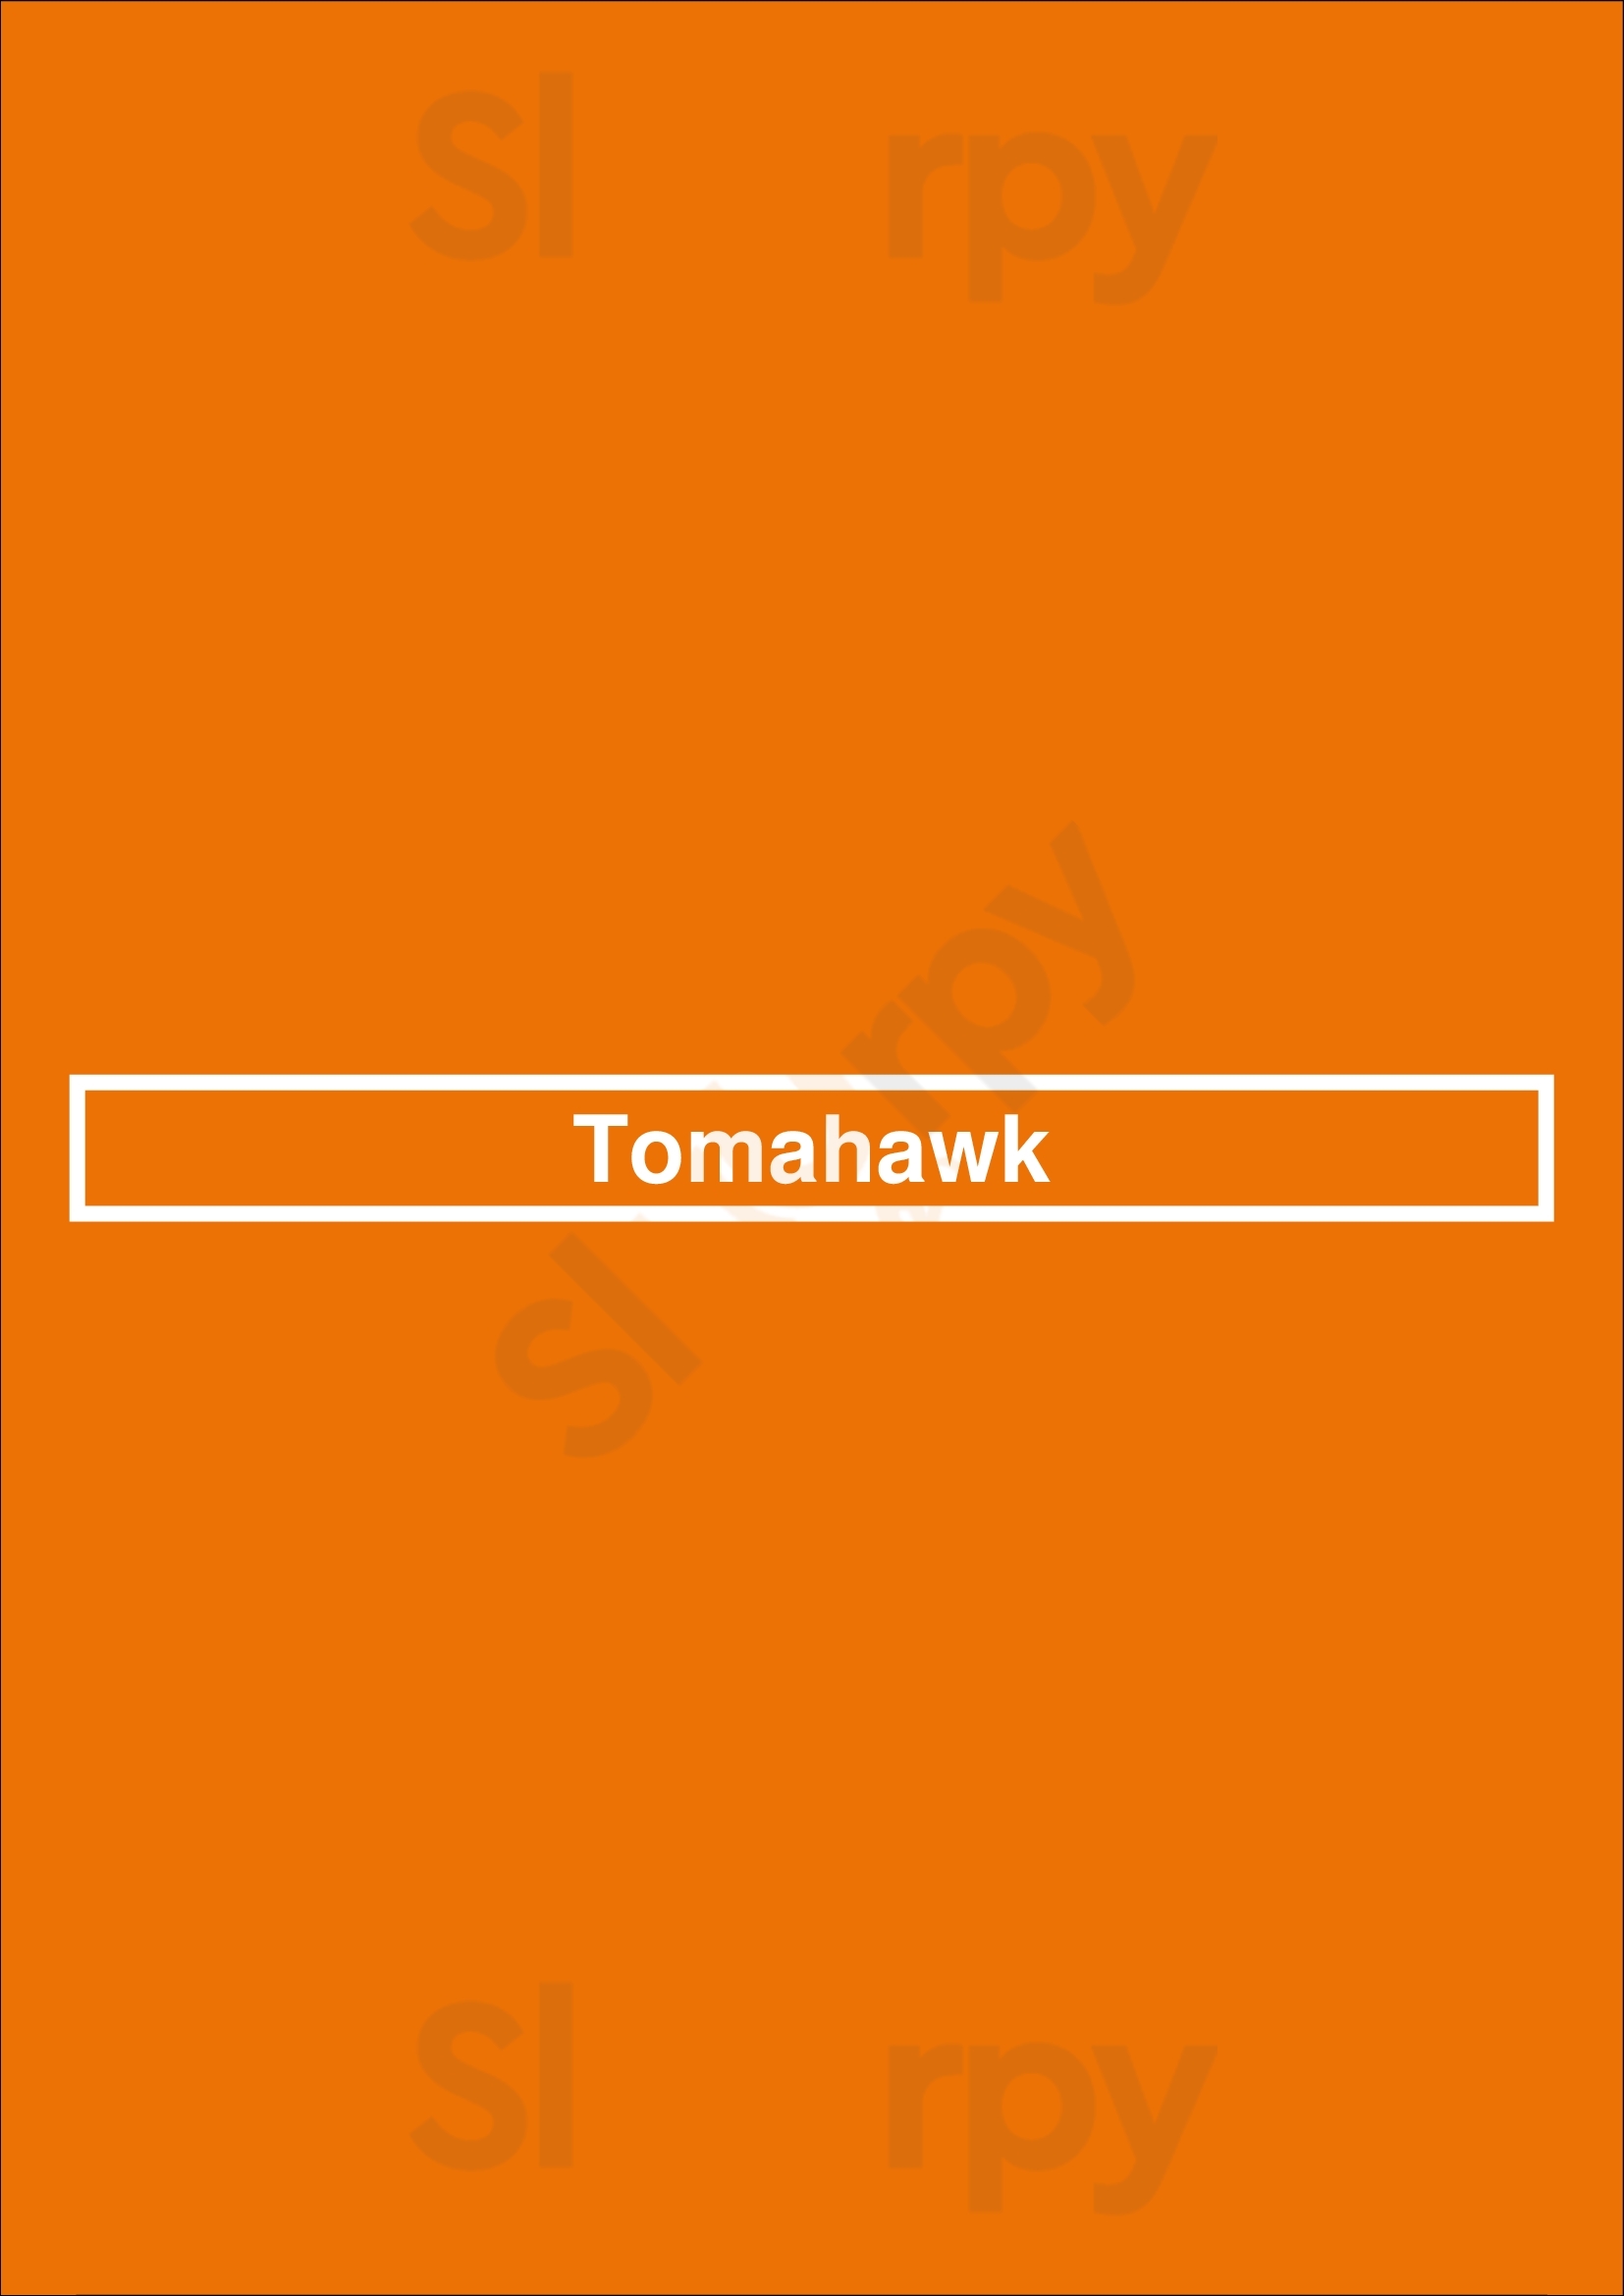 Tomahawk Dublin Menu - 1